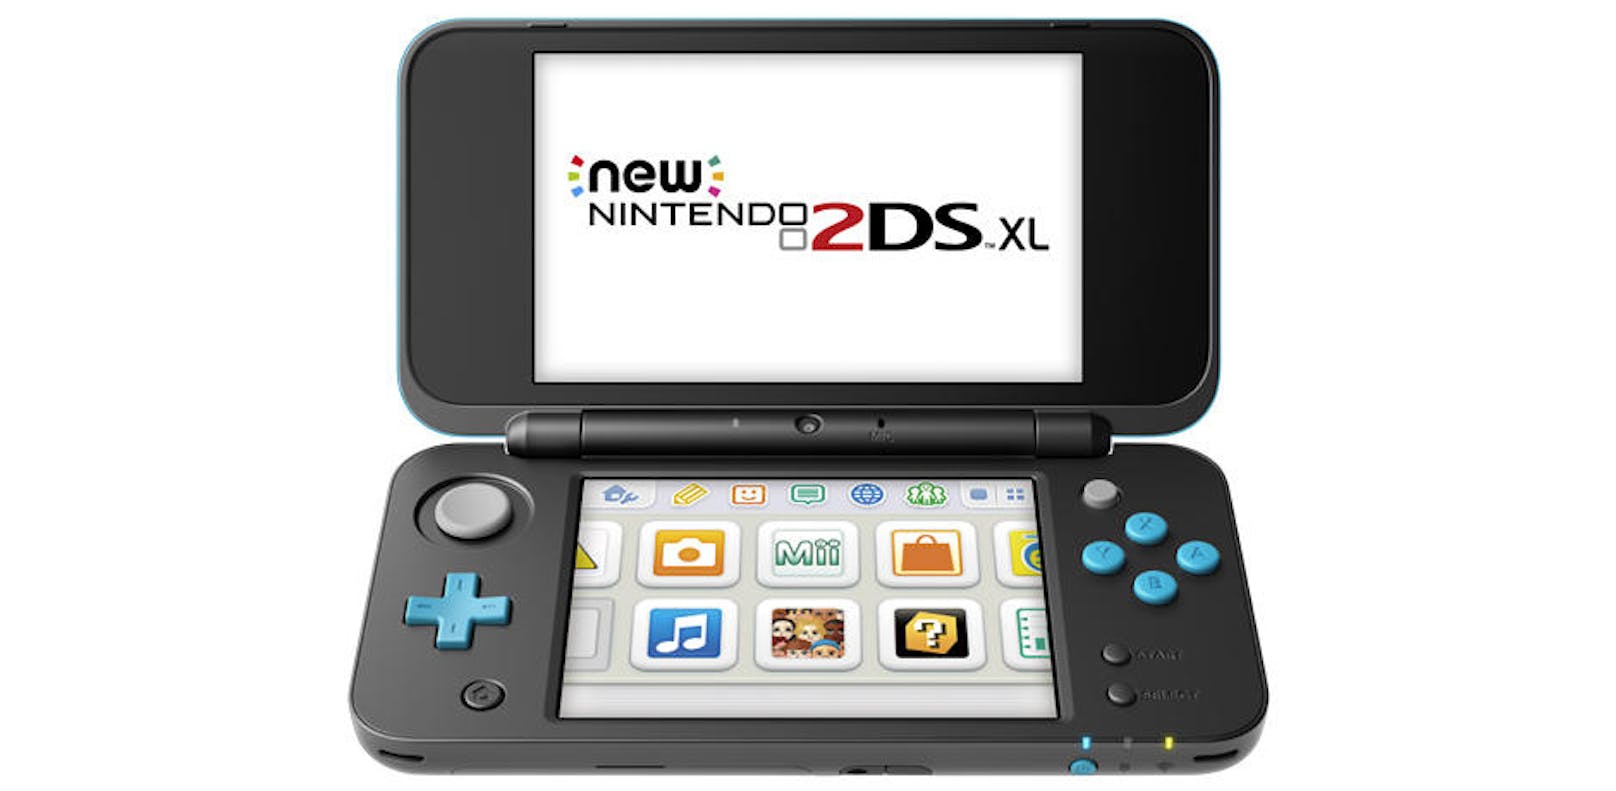 Der New Nintendo 2DS XL ist nicht ein billiger Abklatsch des ursprünglichen 2DS, sondern eine tolle Weiterentwicklung des Nintendo 2DS und 3DS sowie des 3DS XL.